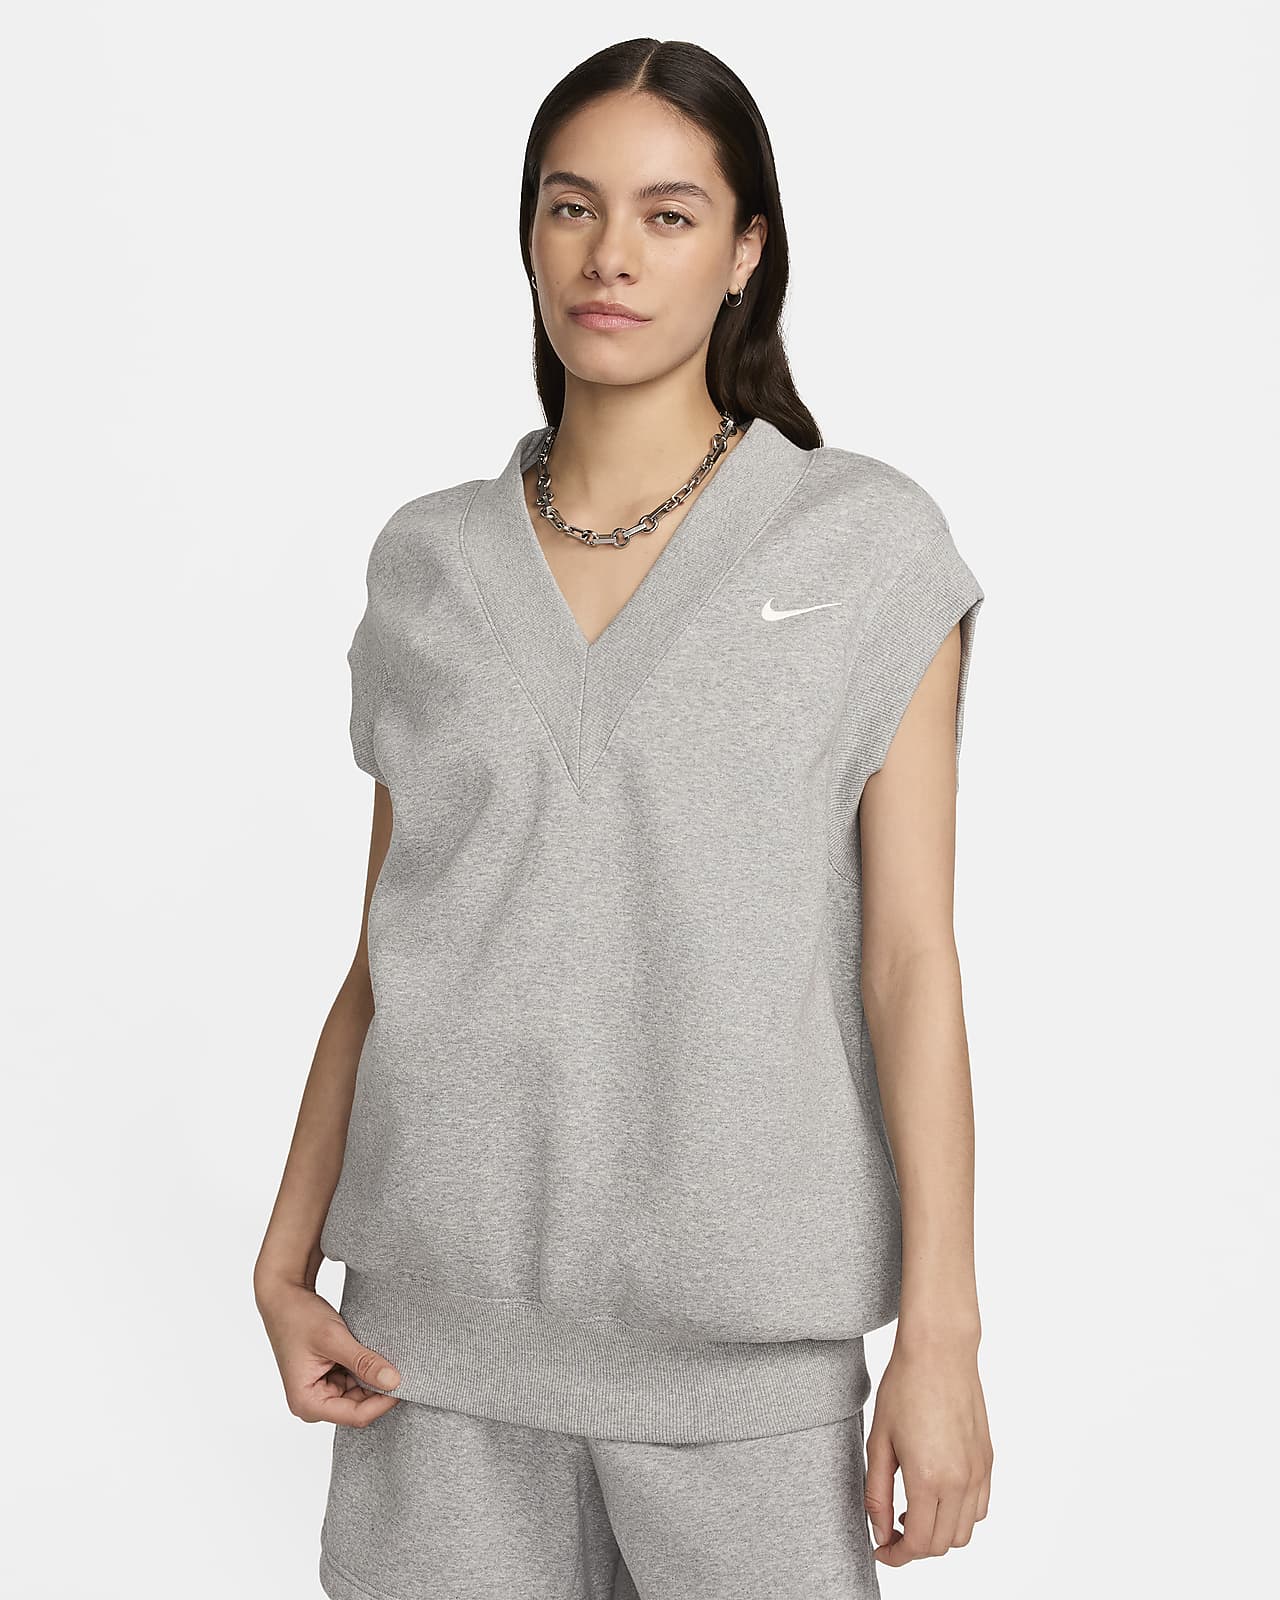 Nike Sportswear Phoenix Fleece extragroße Damenweste